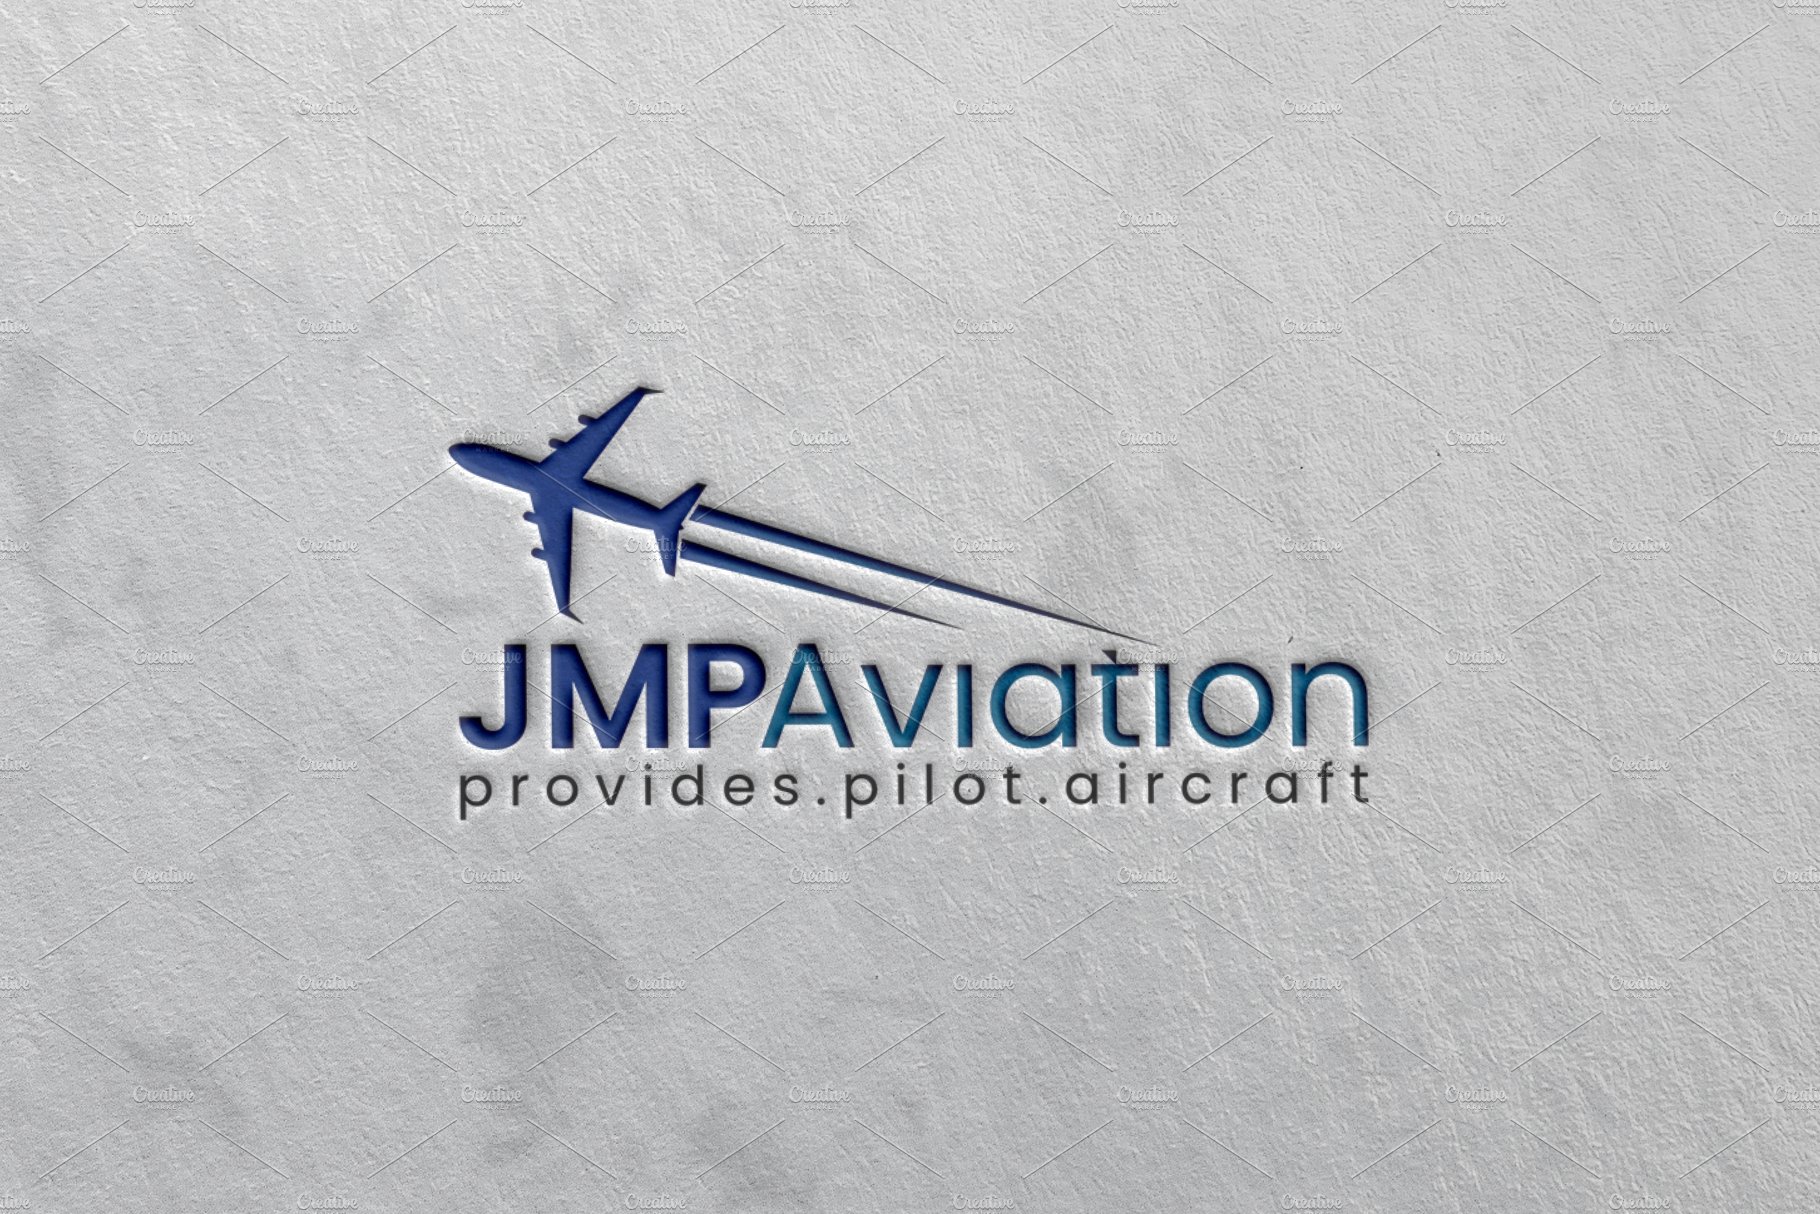 Aviation | Pilot | Airplane Logo cover image.